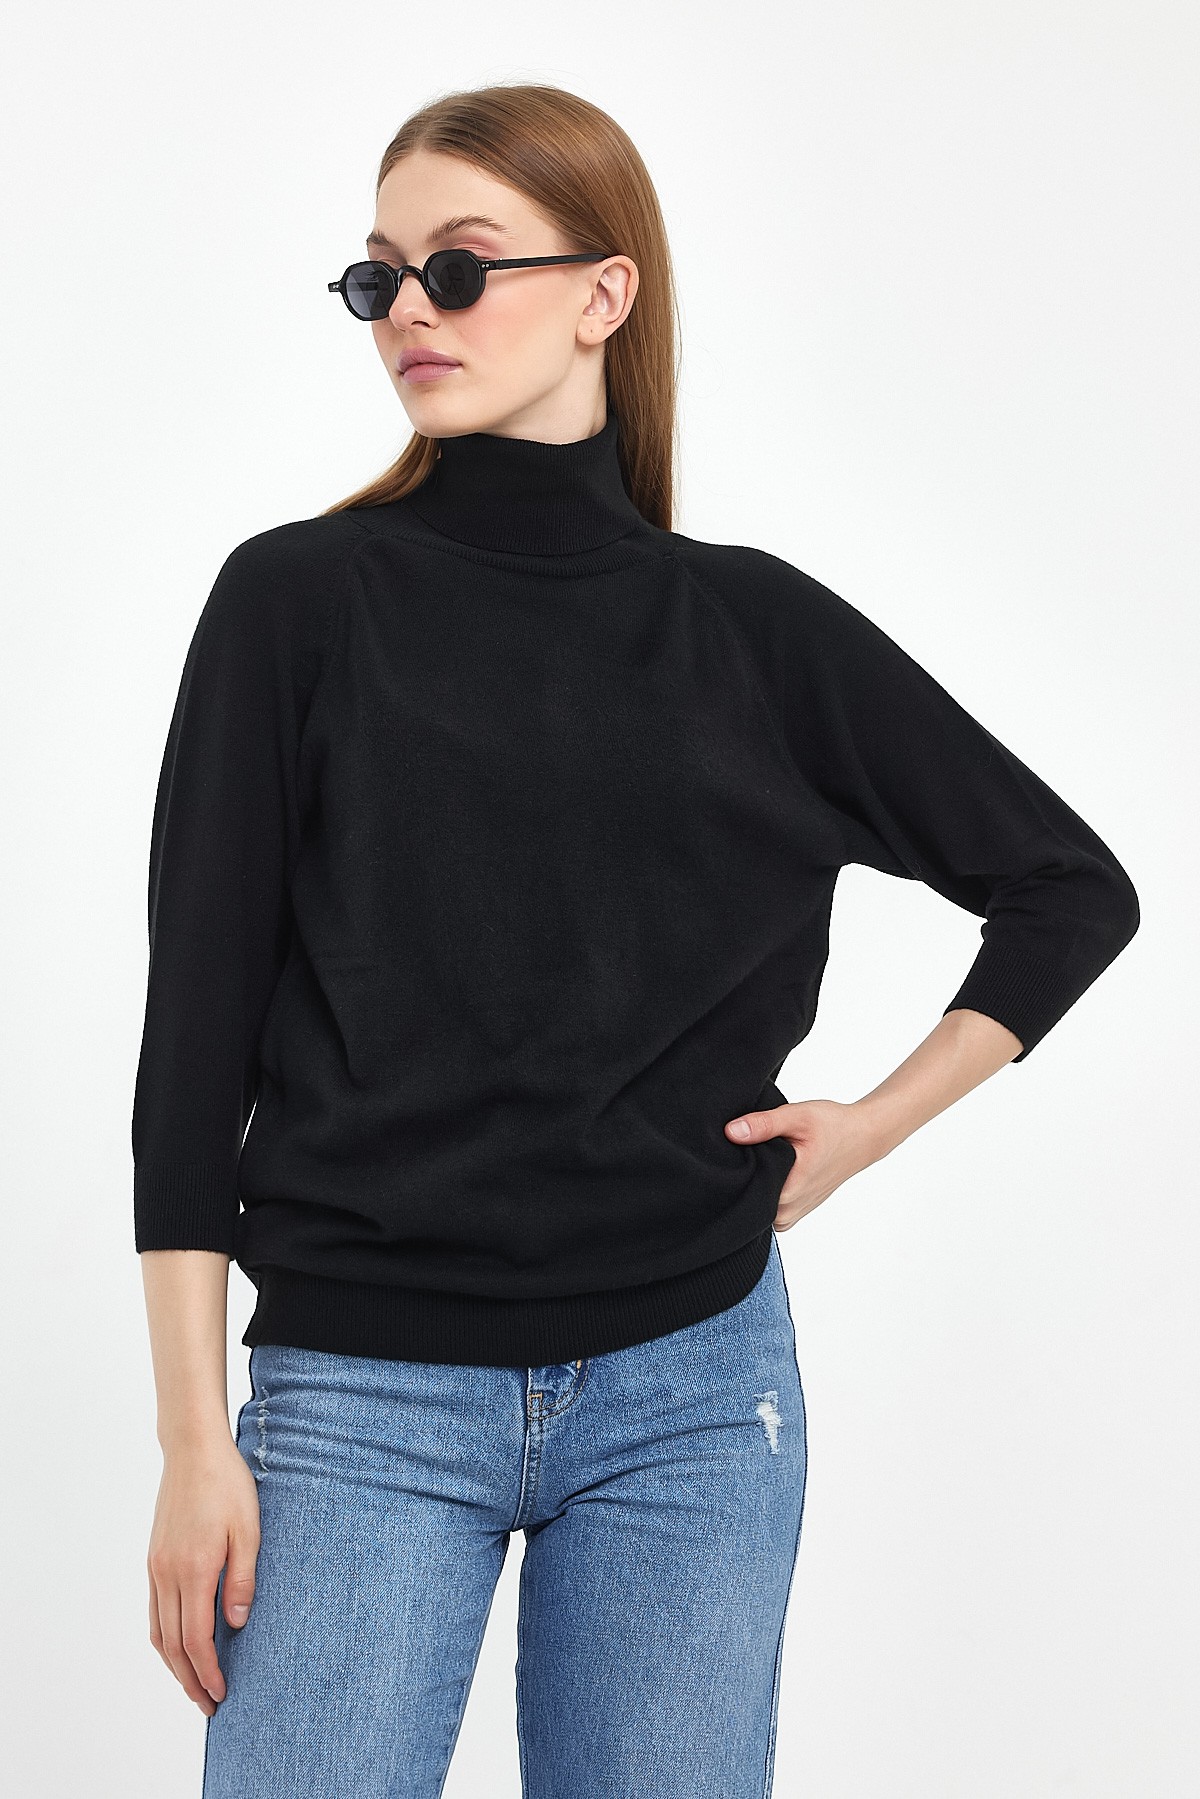 3/4 Sleeve Turtleneck Knitwear Sweater